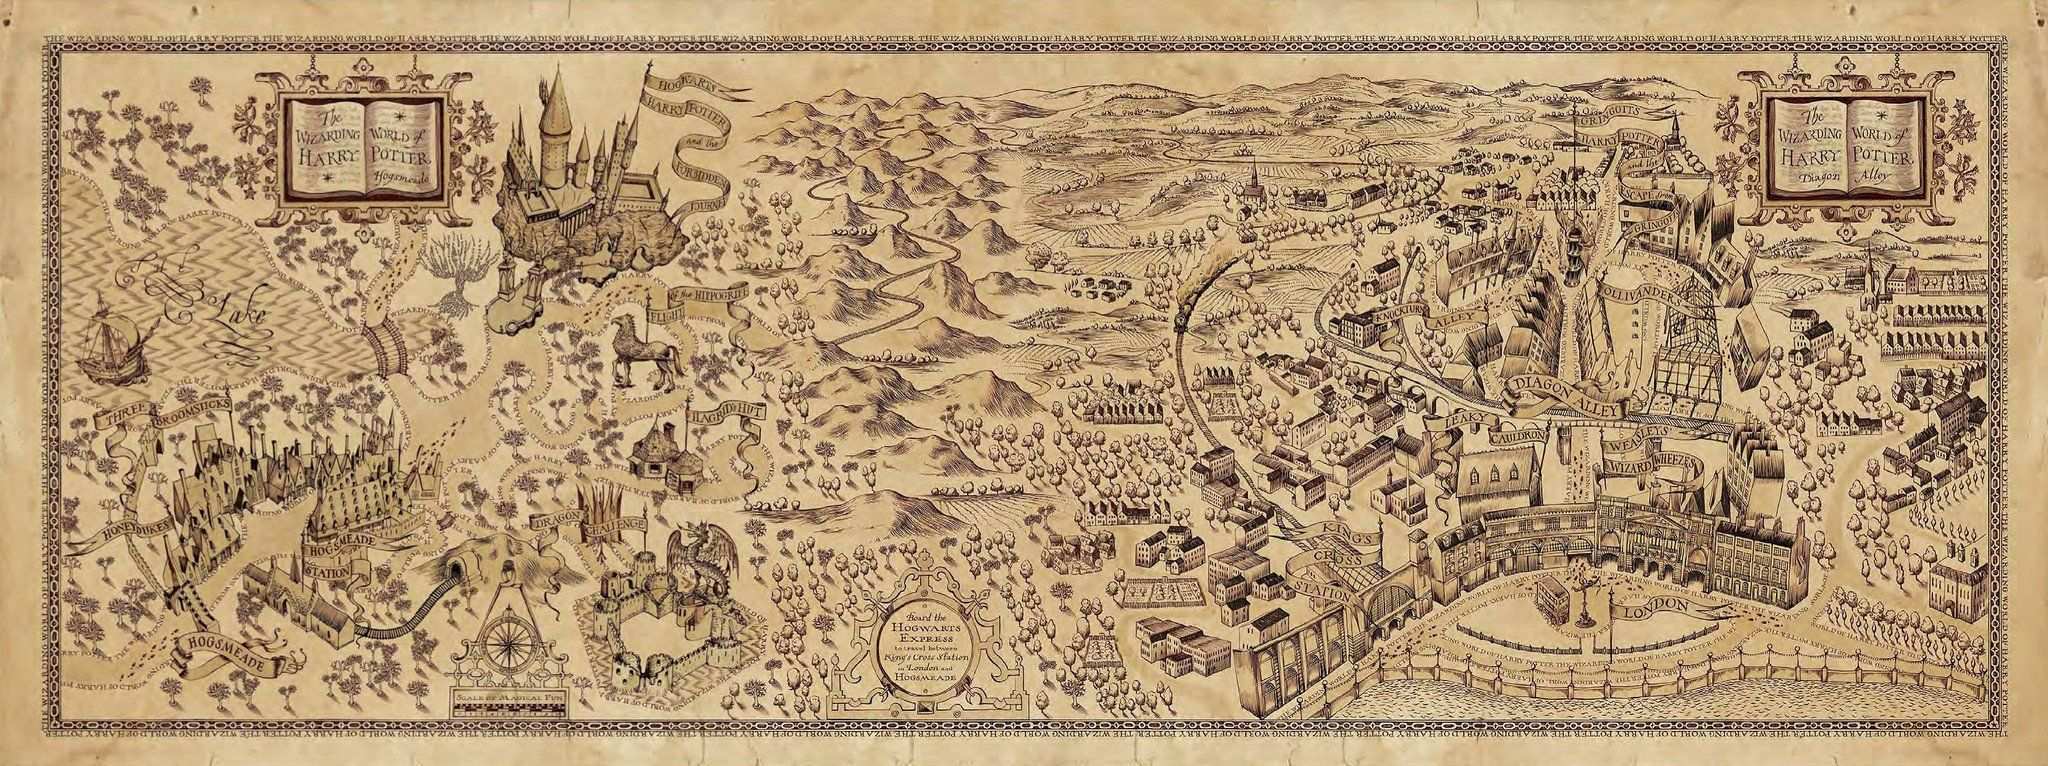 Pin Von Laura Lehrmann Auf Theme Park Maps Harry Potter Magie Harry Potter World Harry Potter Geschenke